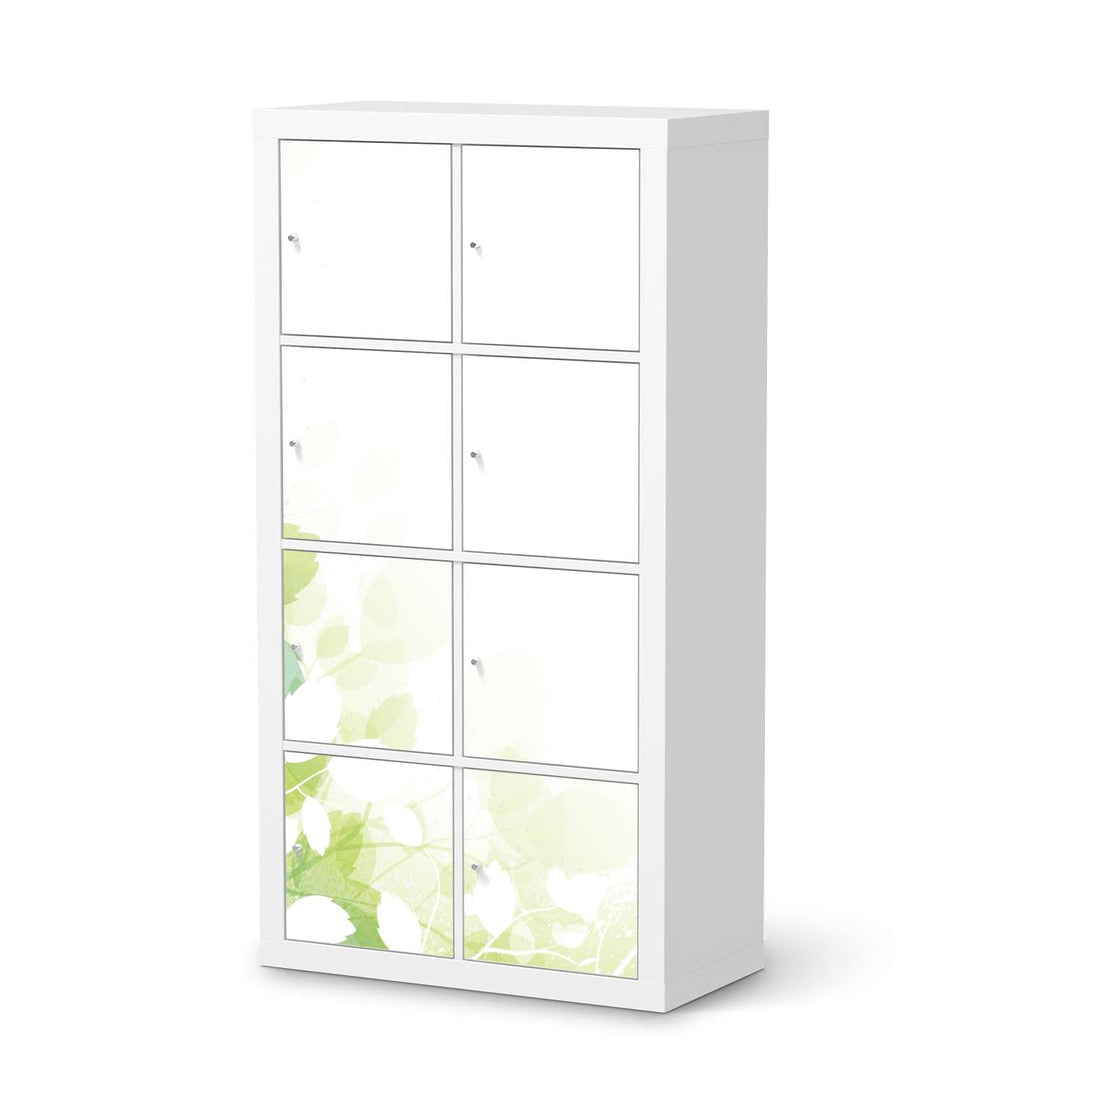 Folie für Möbel Flower Light - IKEA Kallax Regal 8 Türen  - weiss